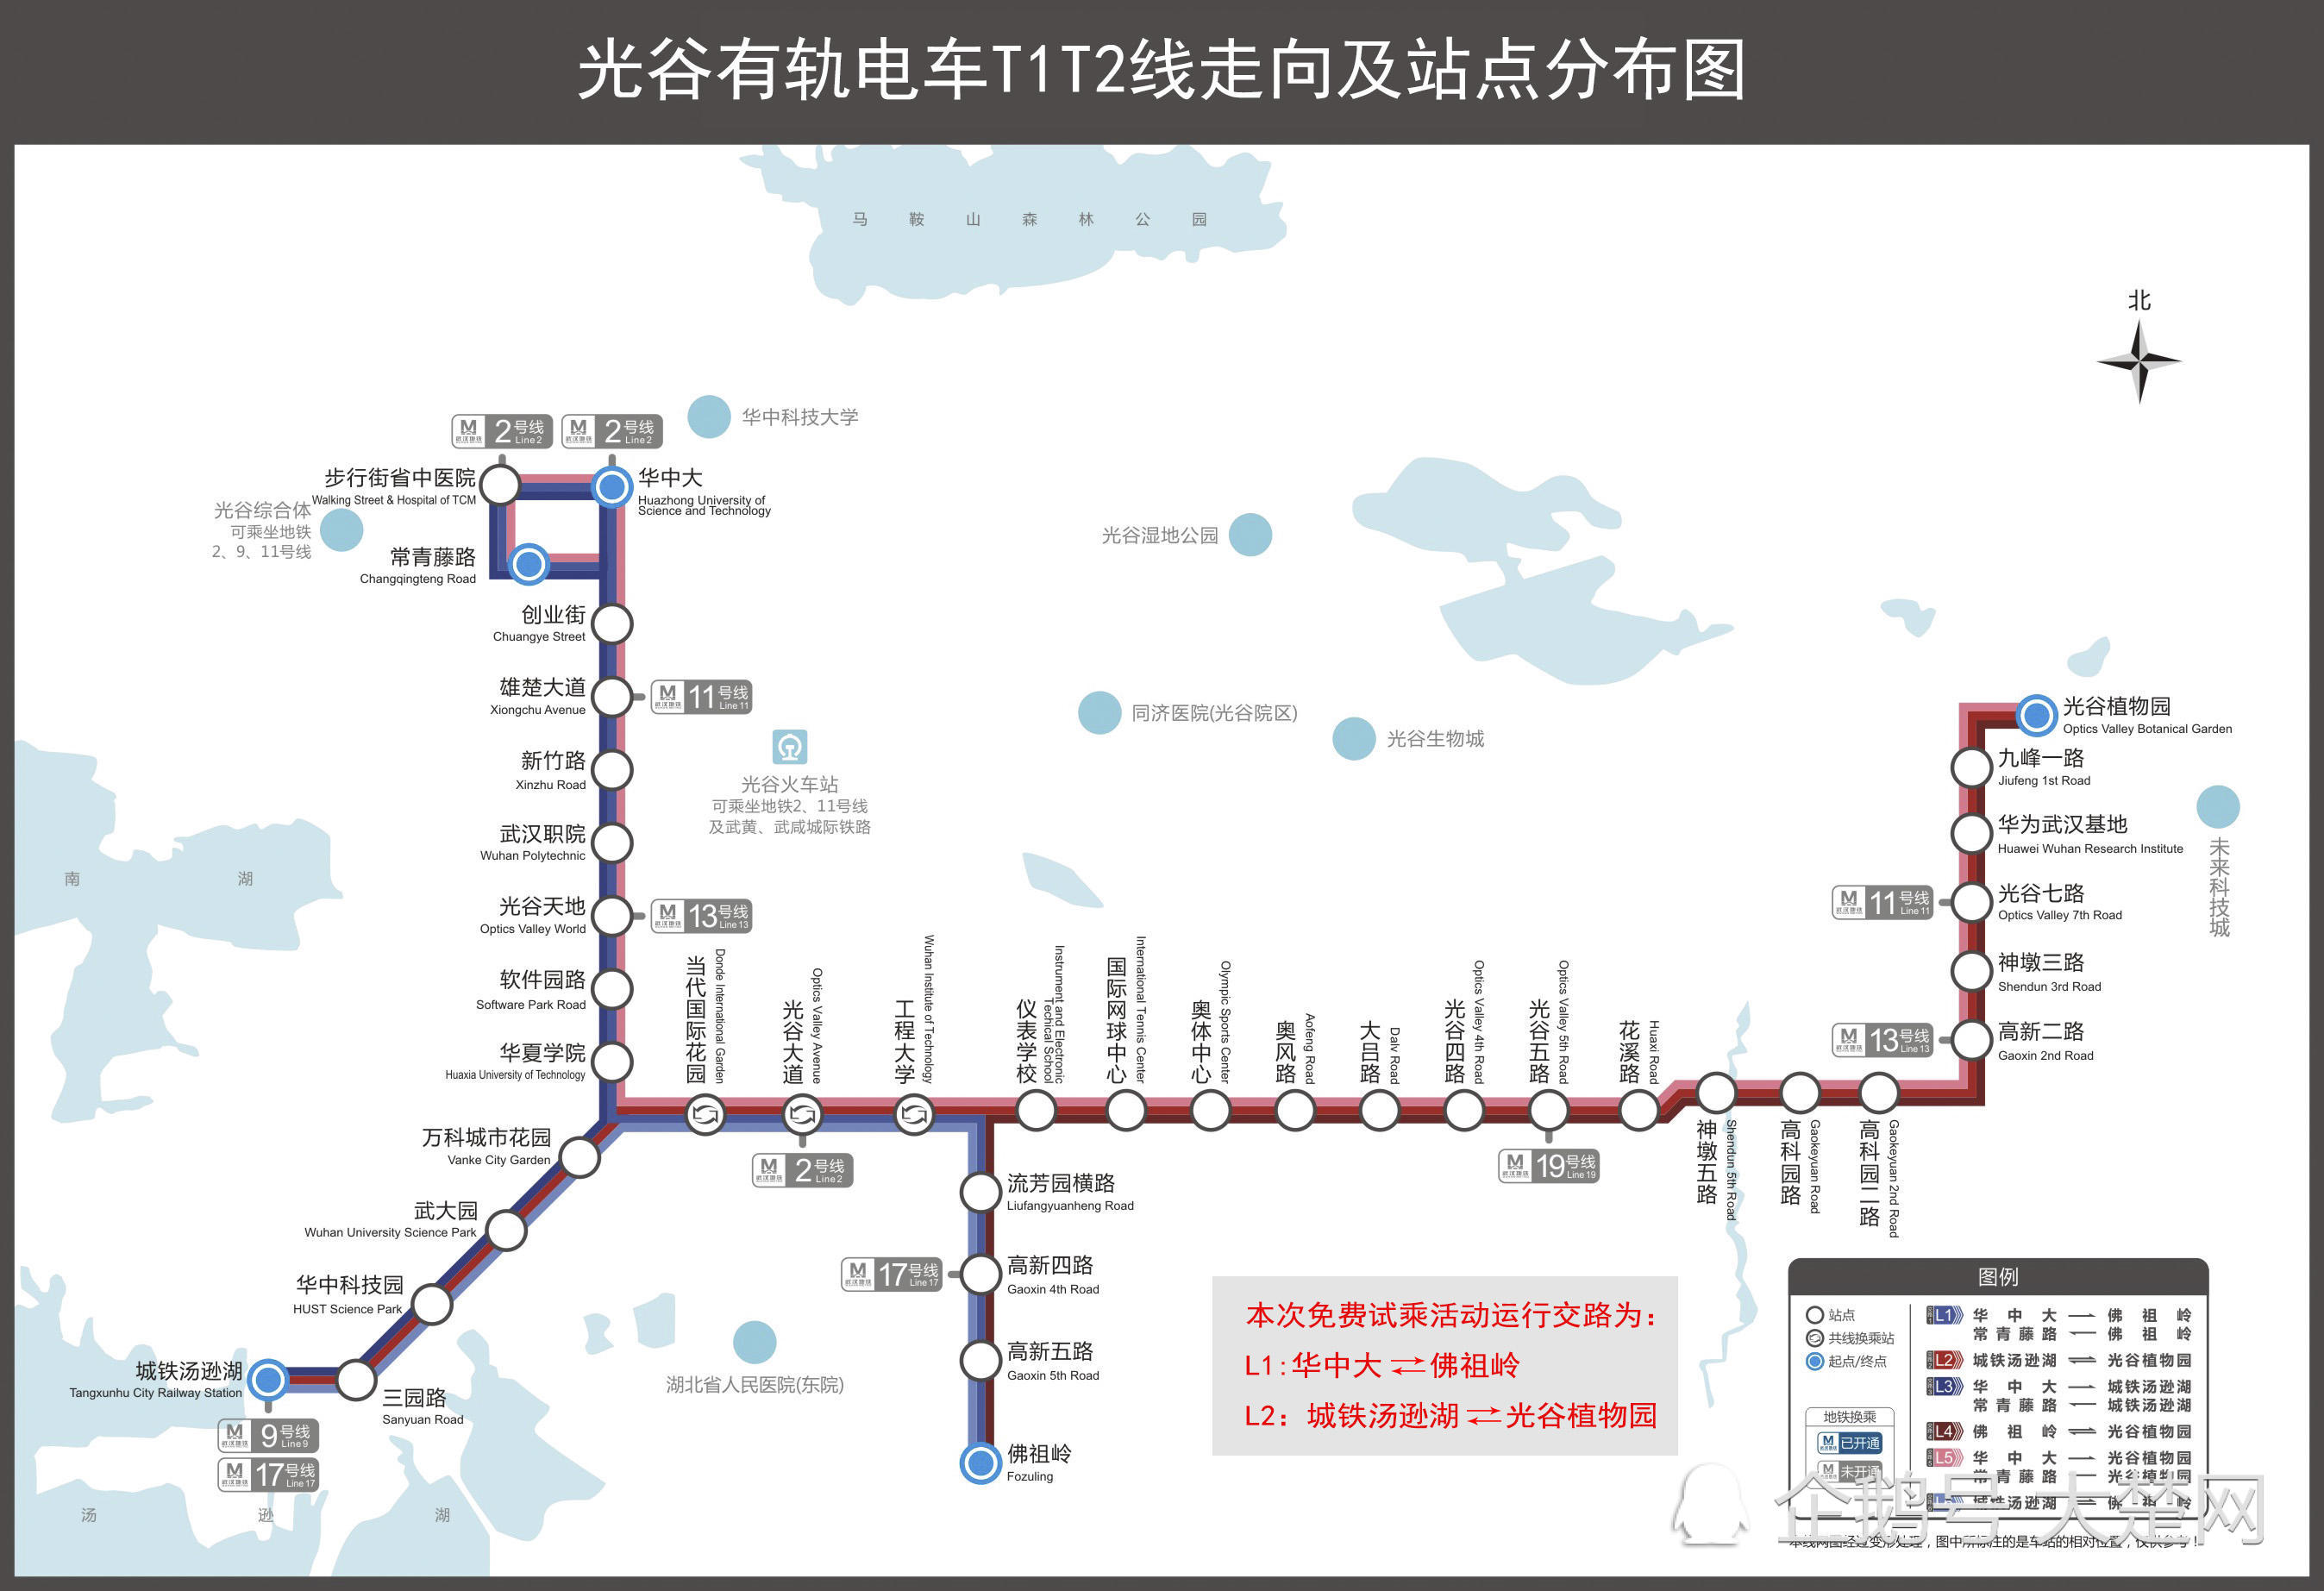 光谷有轨电车t1,t2线于2017年12月18日,实现全线通车试运行